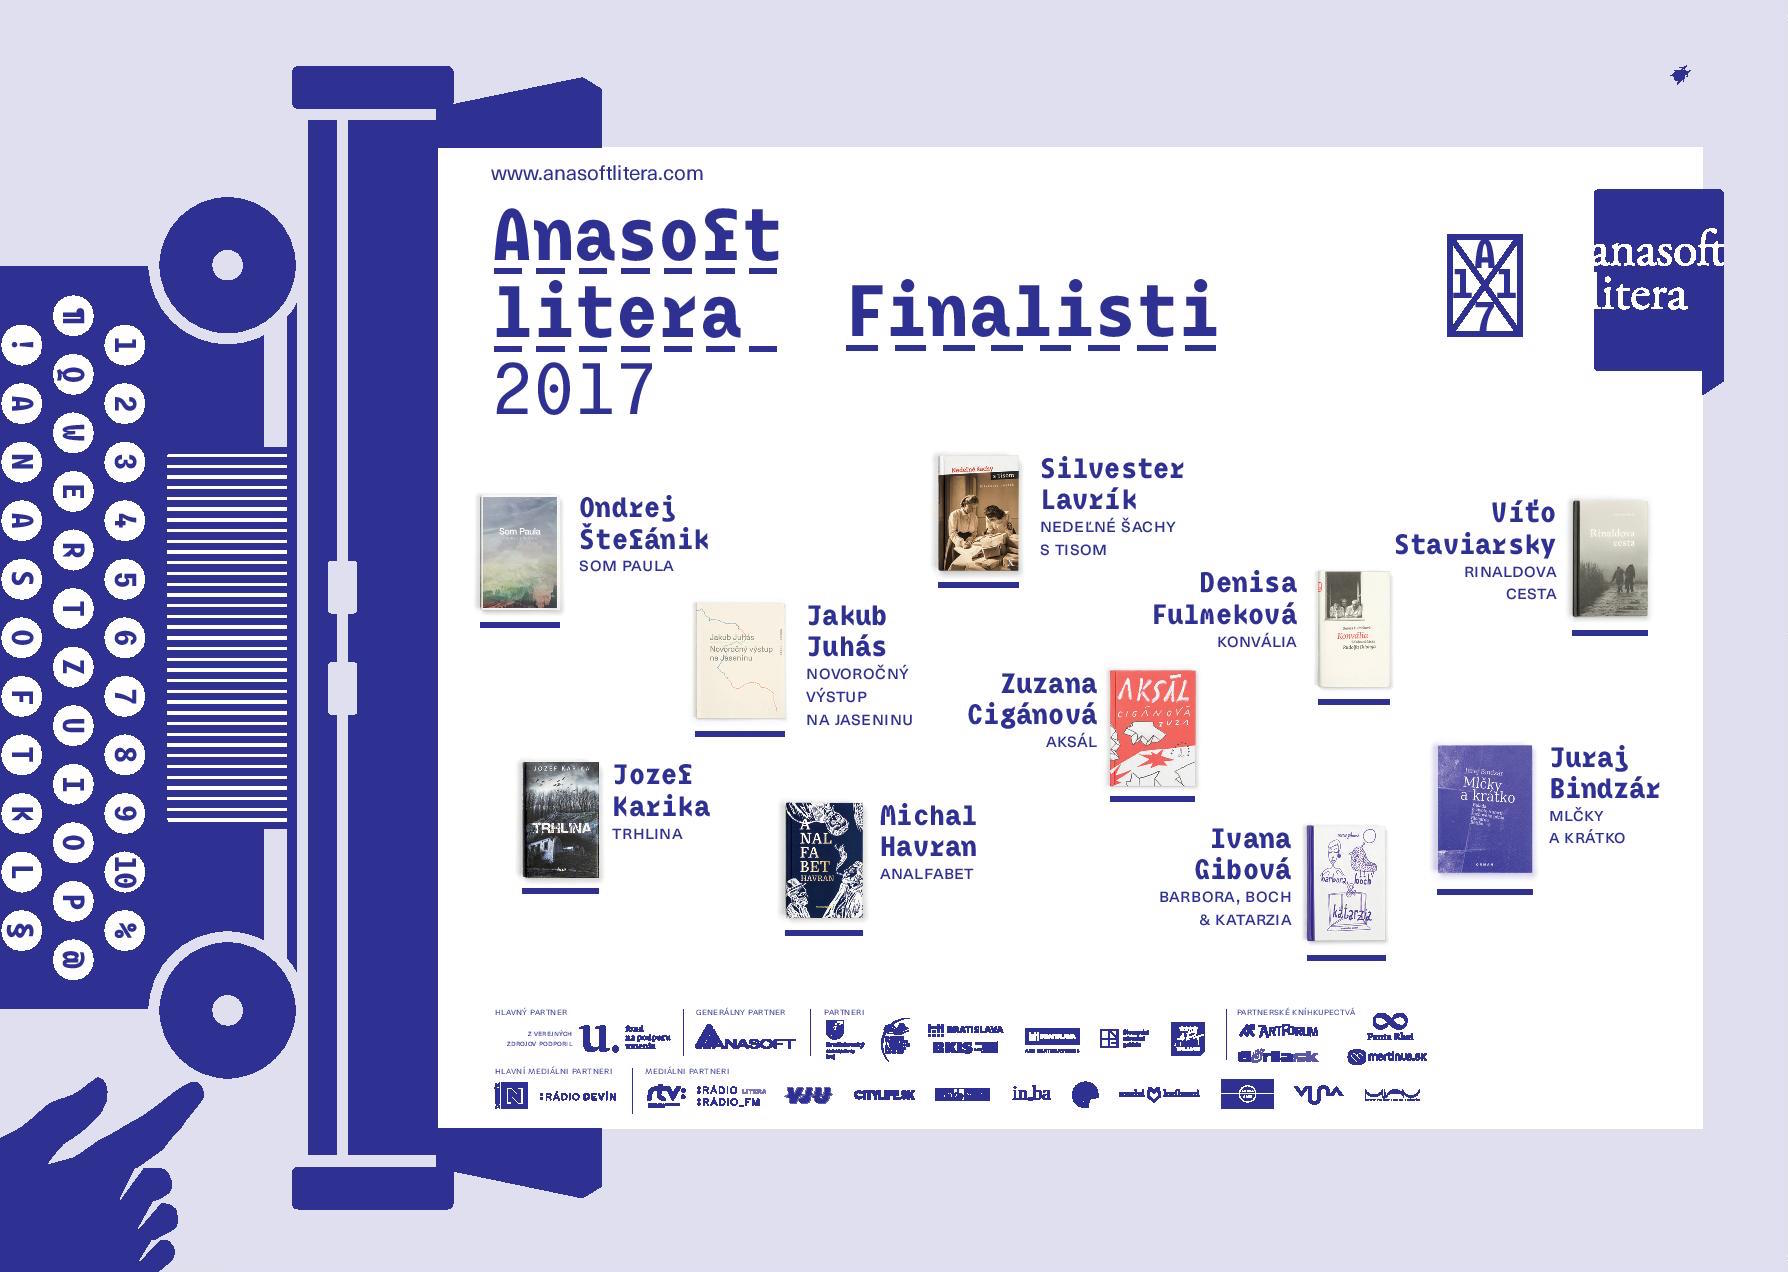 Anasoft litera finalisti horizontal